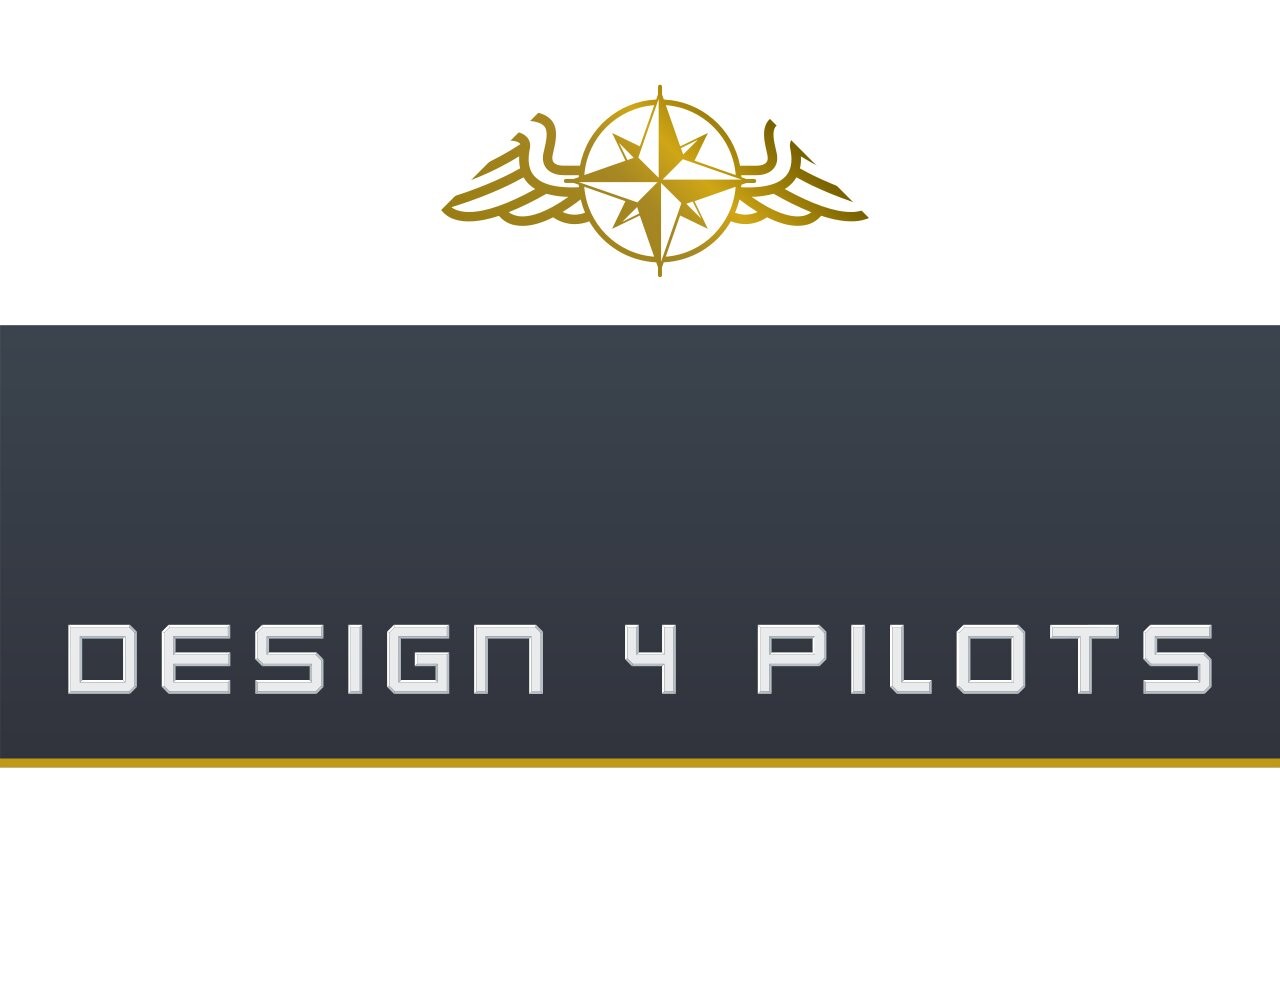 Design 4 pilots